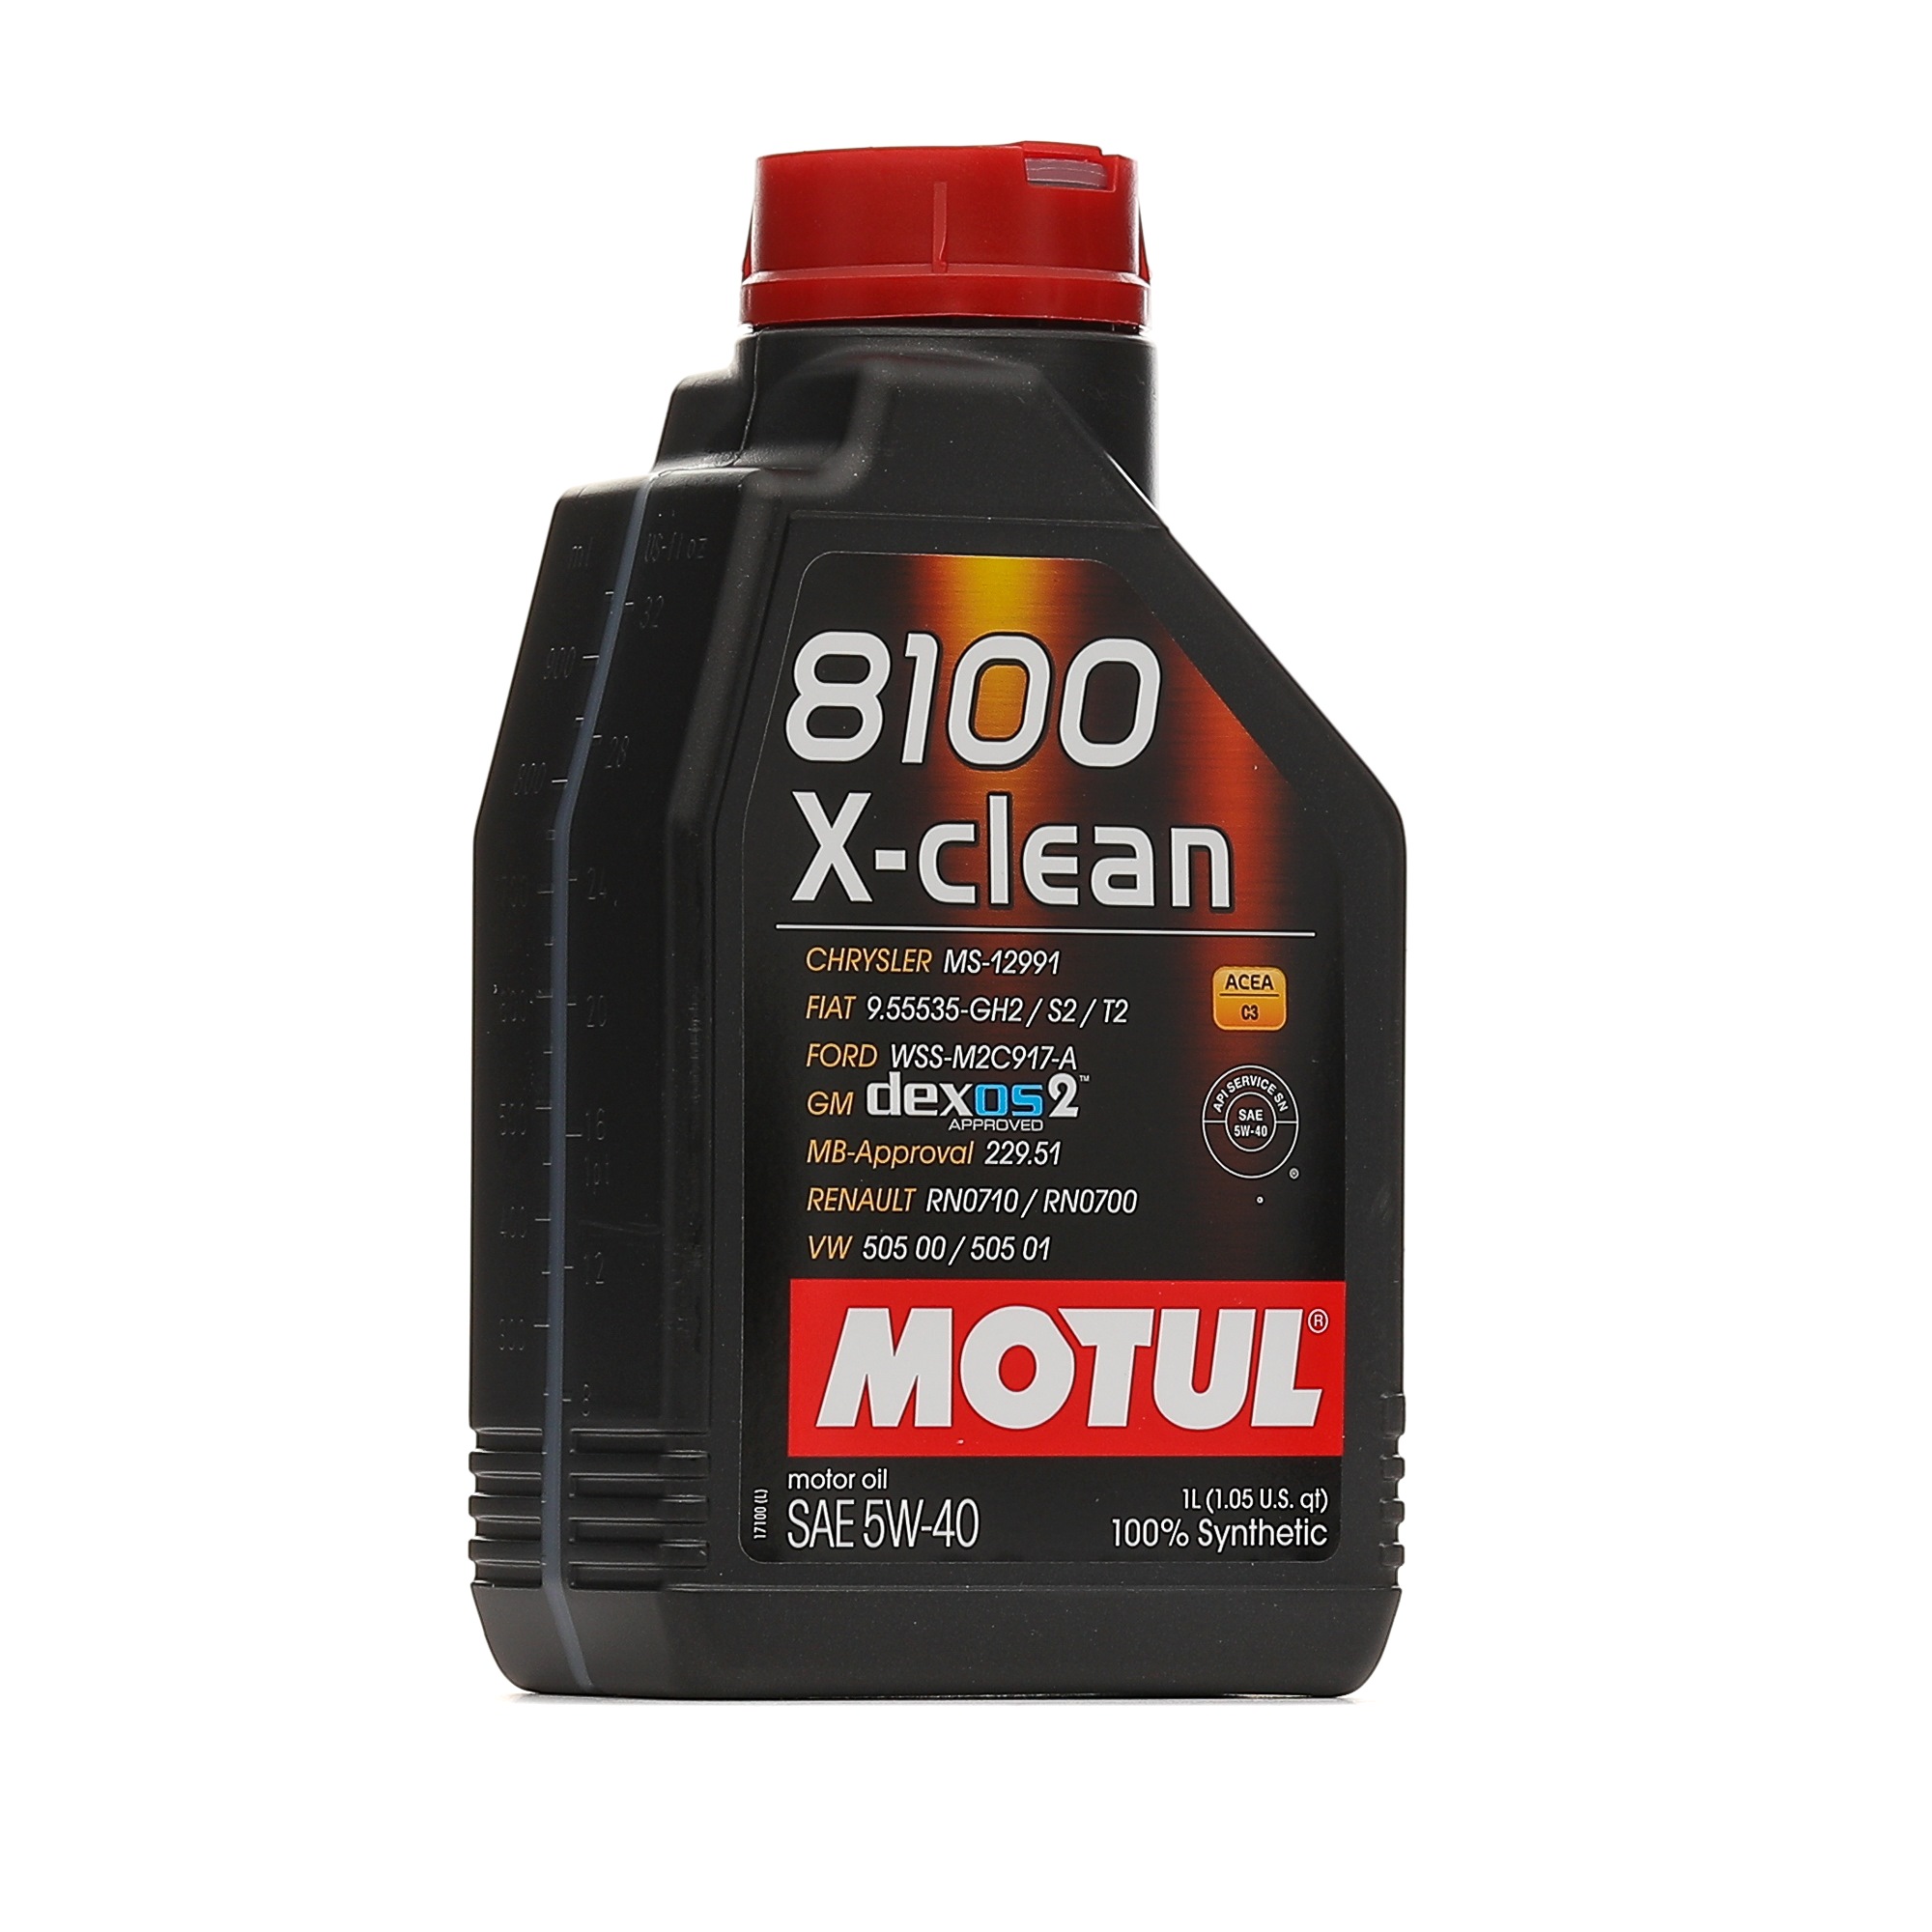 SUZUKI MOTUL X-CLEAN 5W-40, 1l Motoröl 109227 günstig kaufen